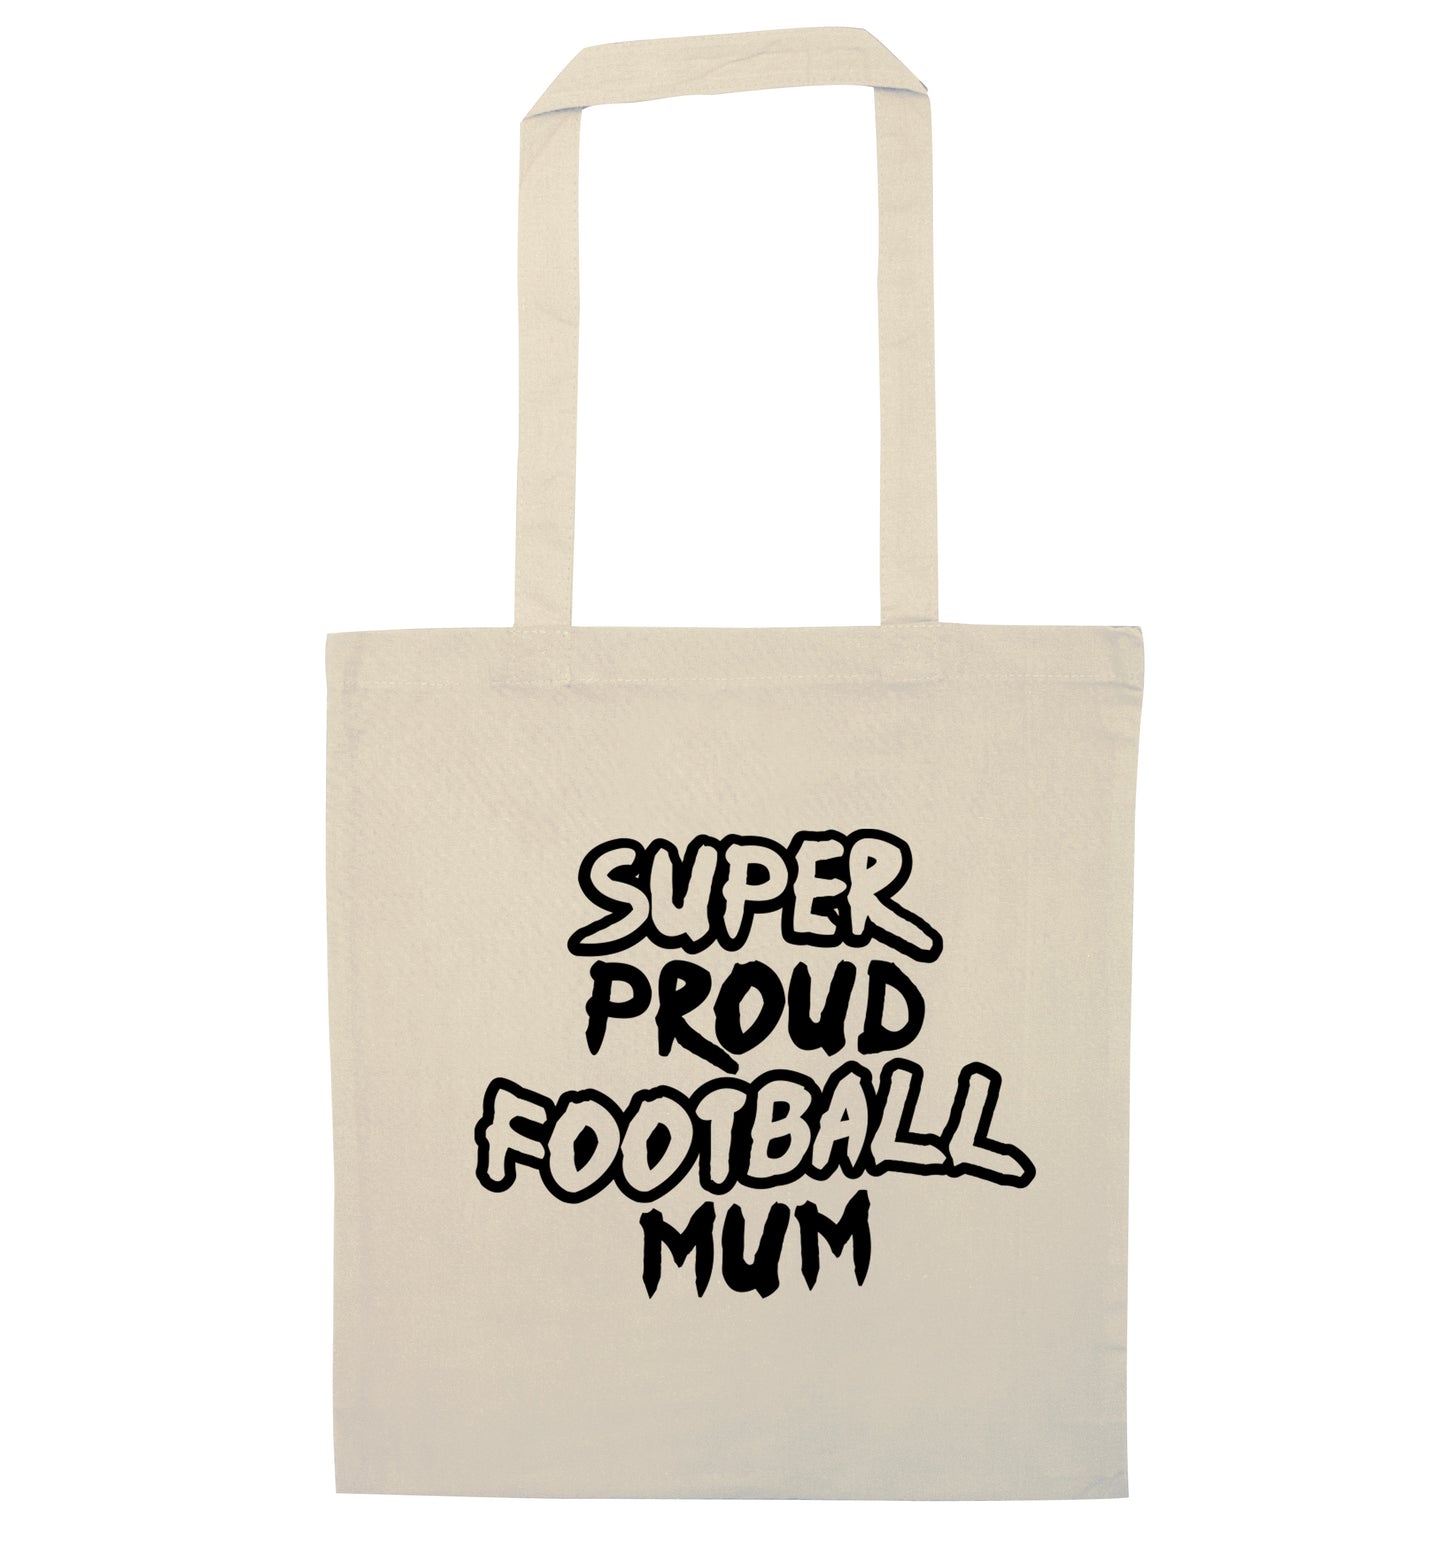 Super proud football mum natural tote bag